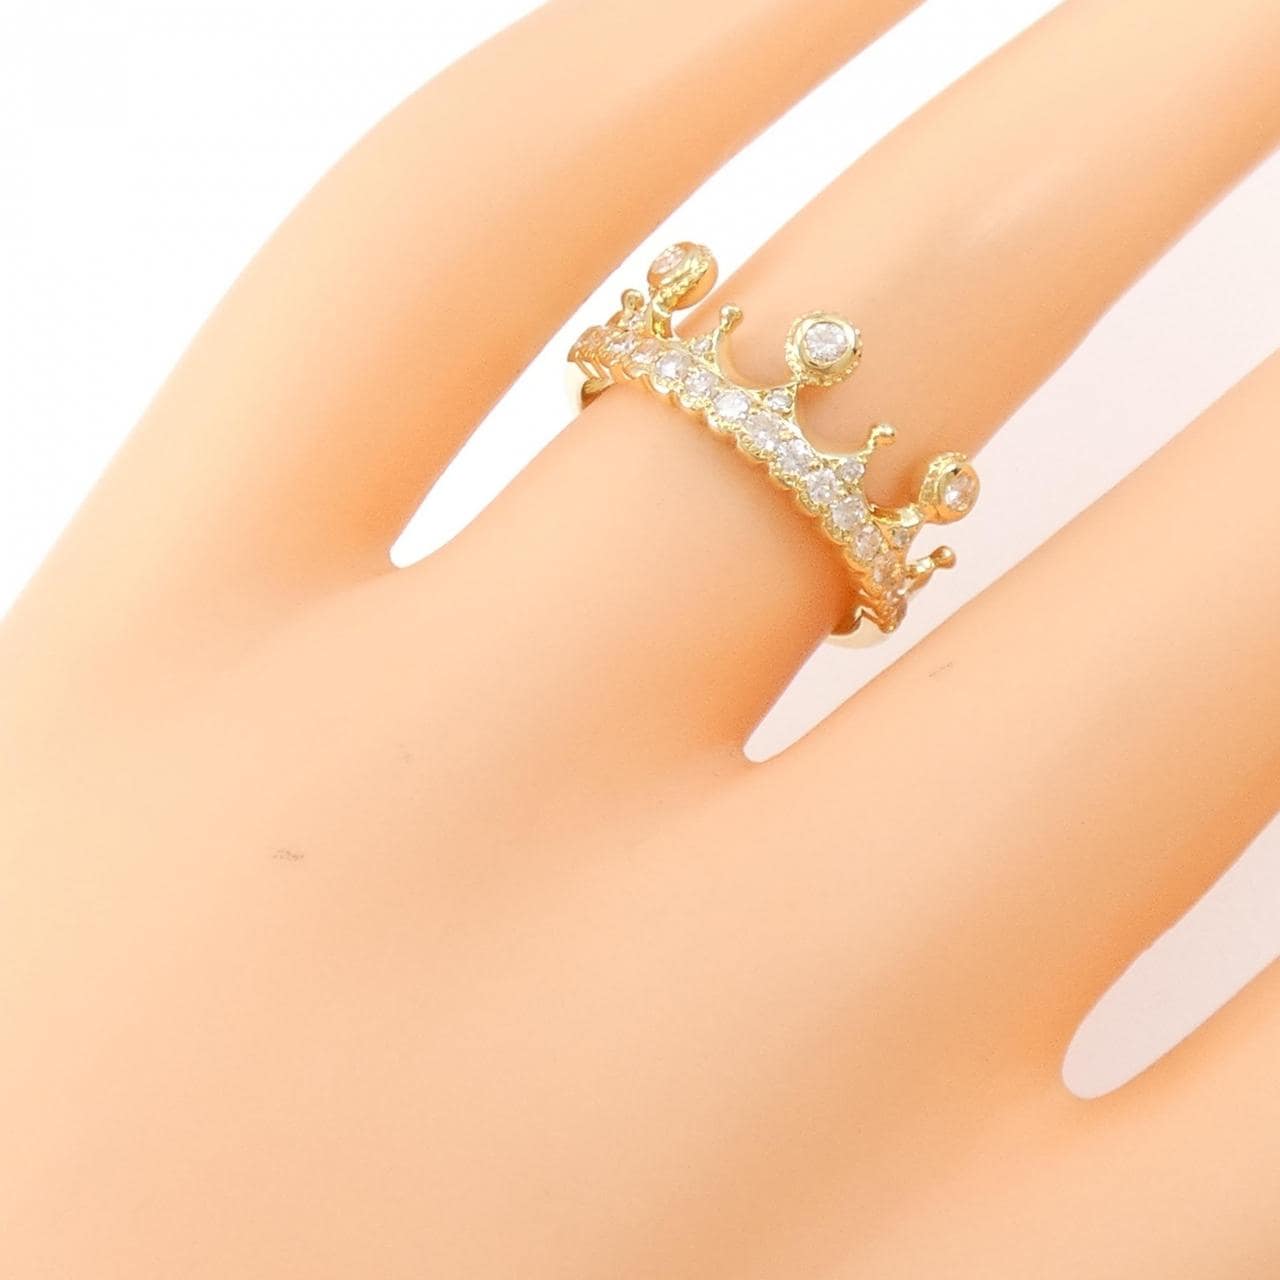 K18YG Crown Diamond Ring 0.43CT